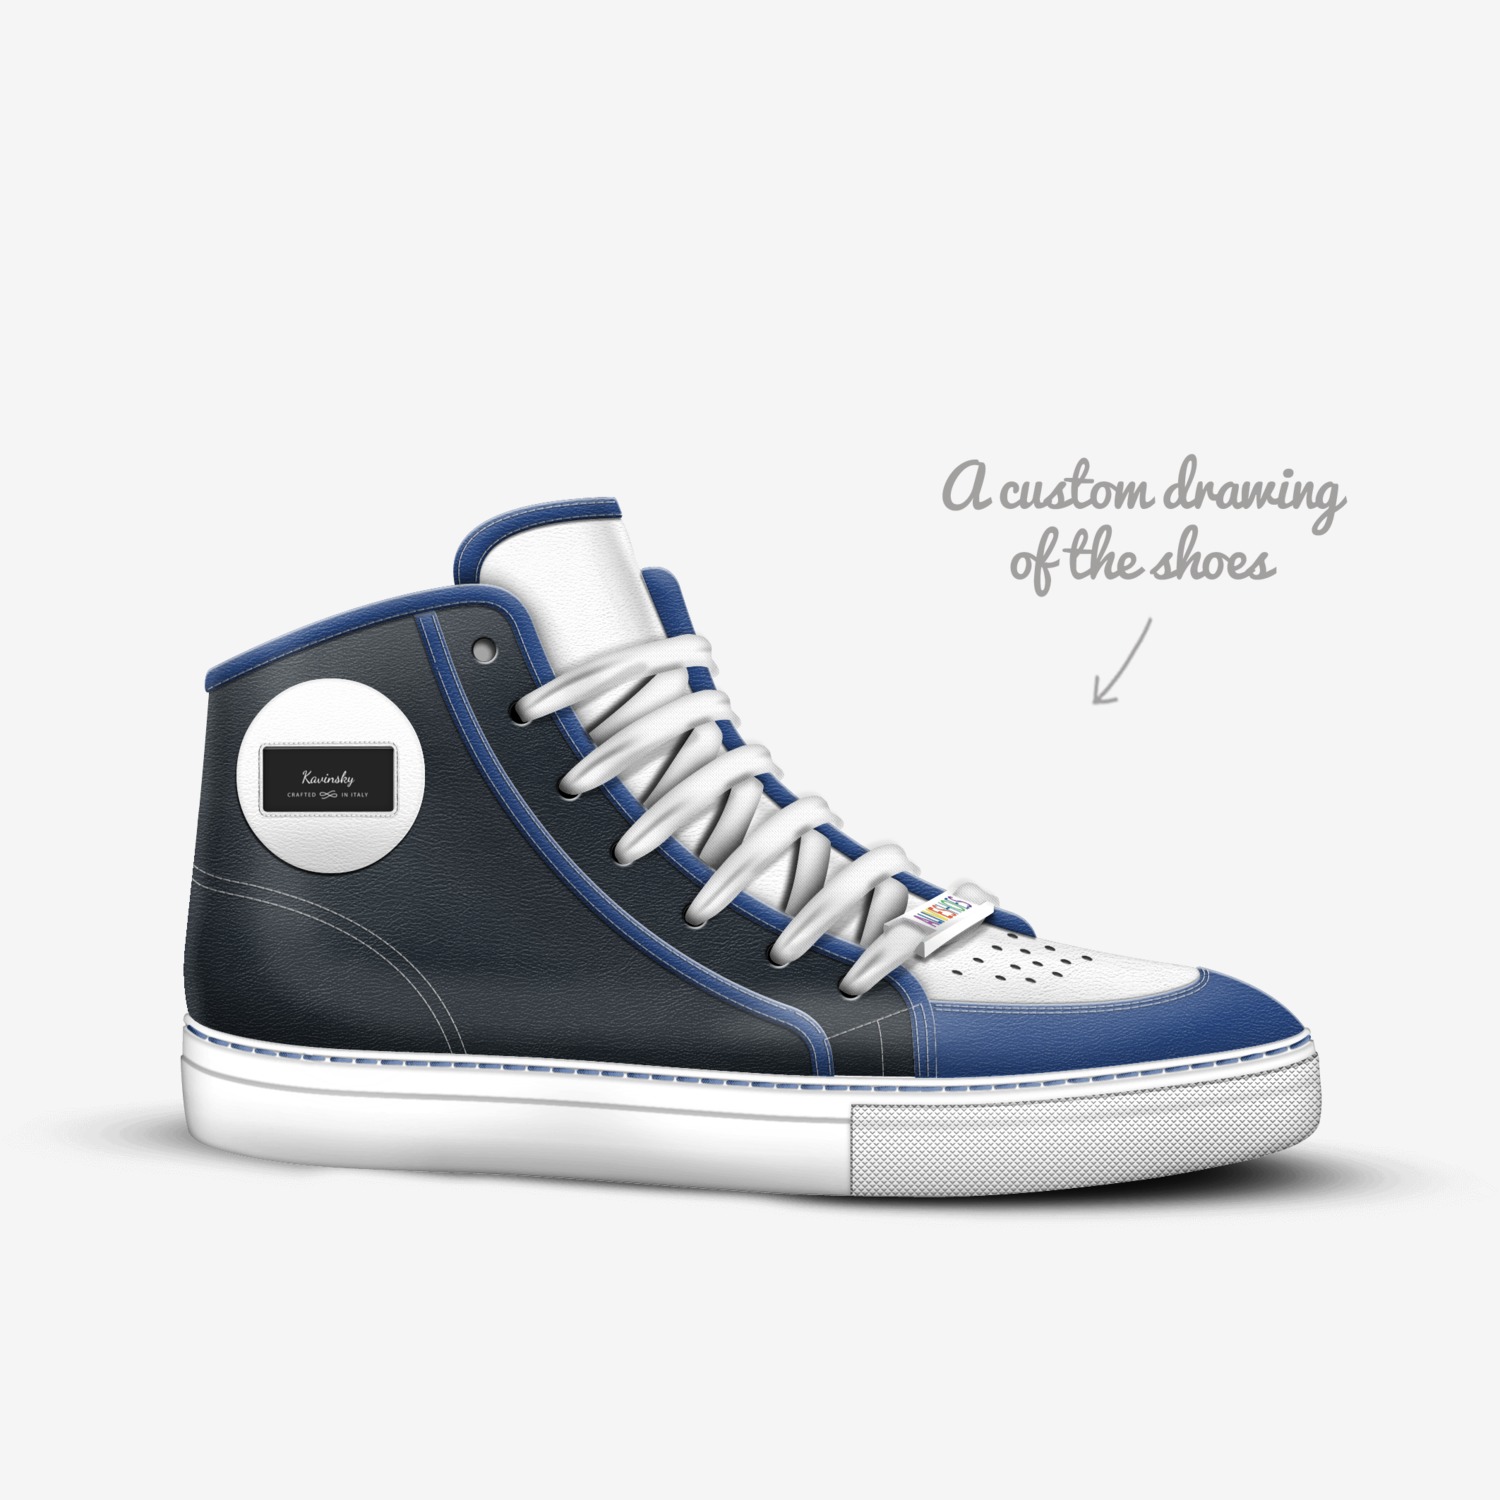 Kavinsky | A Custom Shoe concept by Asrar Khan